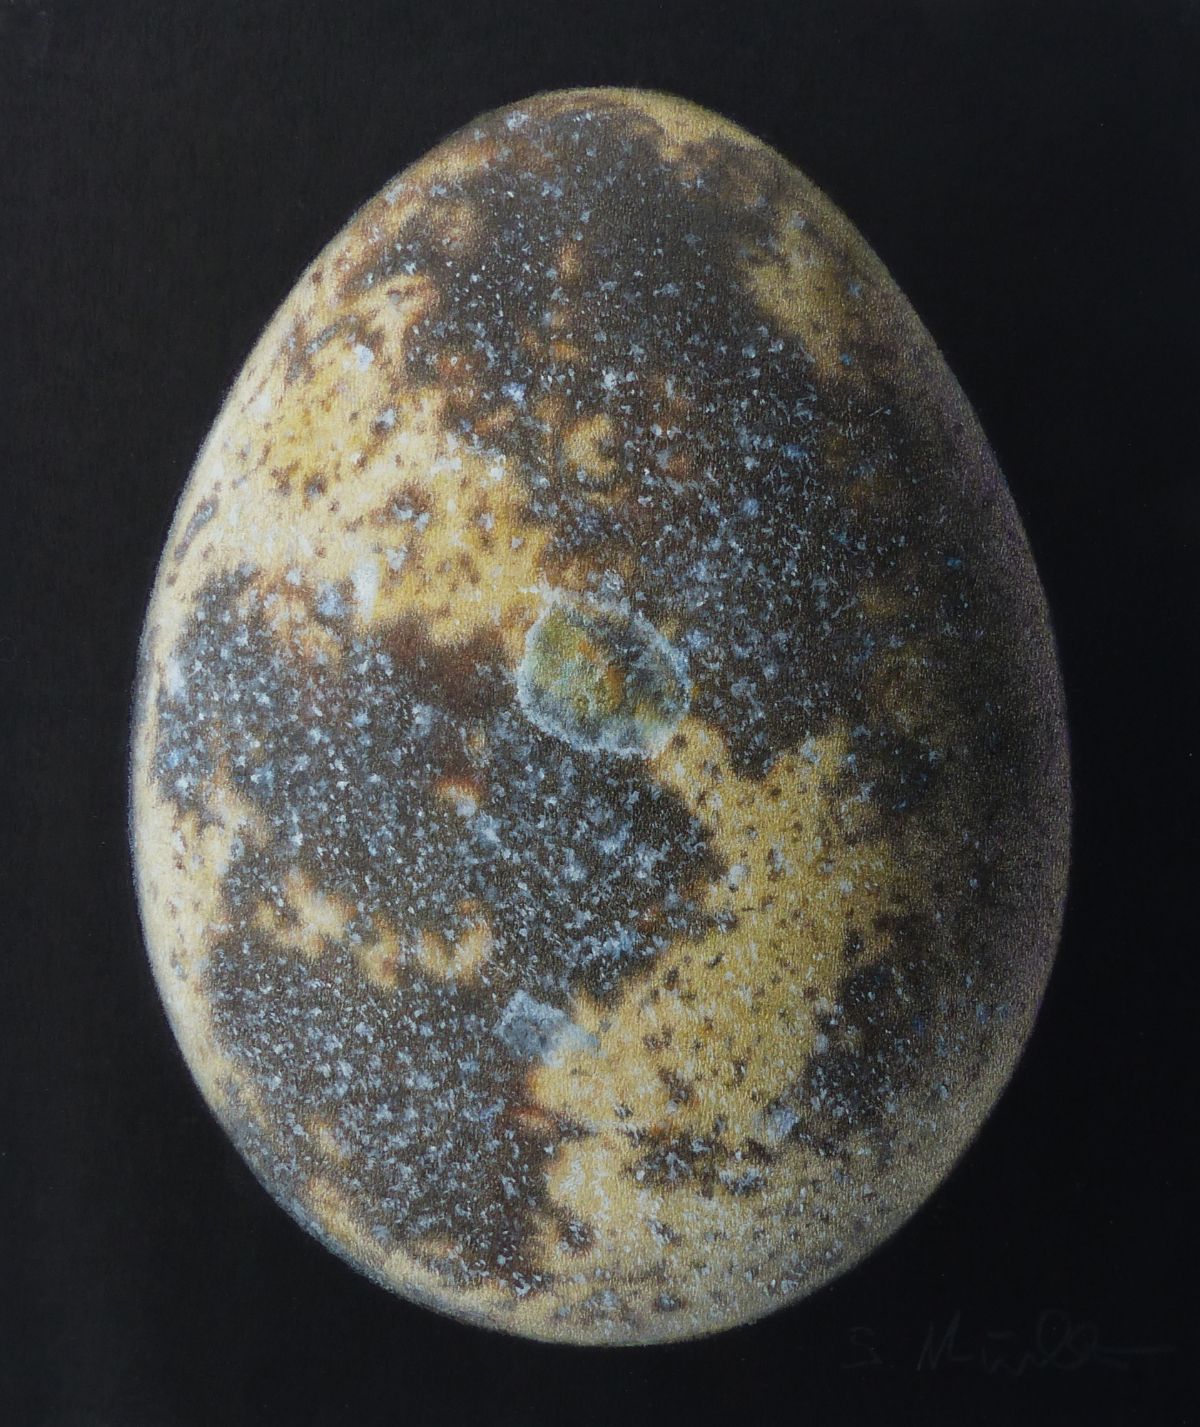 Quail Egg on Black